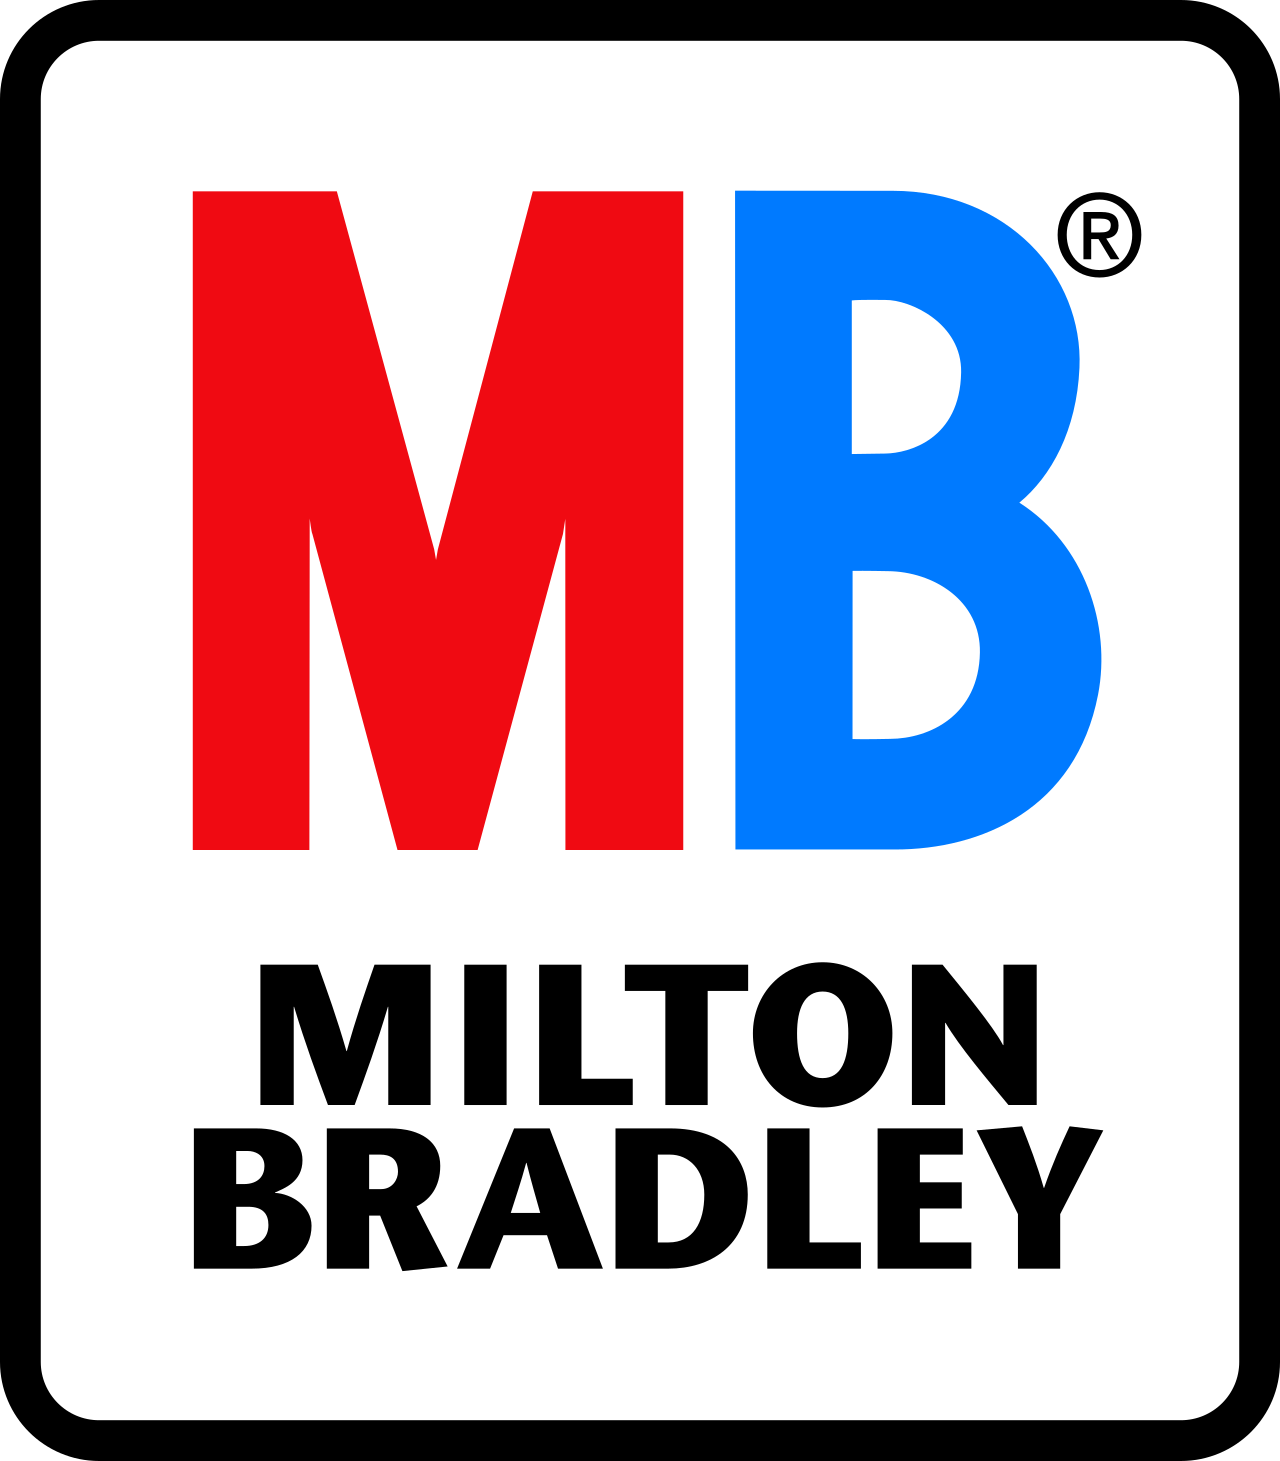 Mb logo Free Stock Vectors